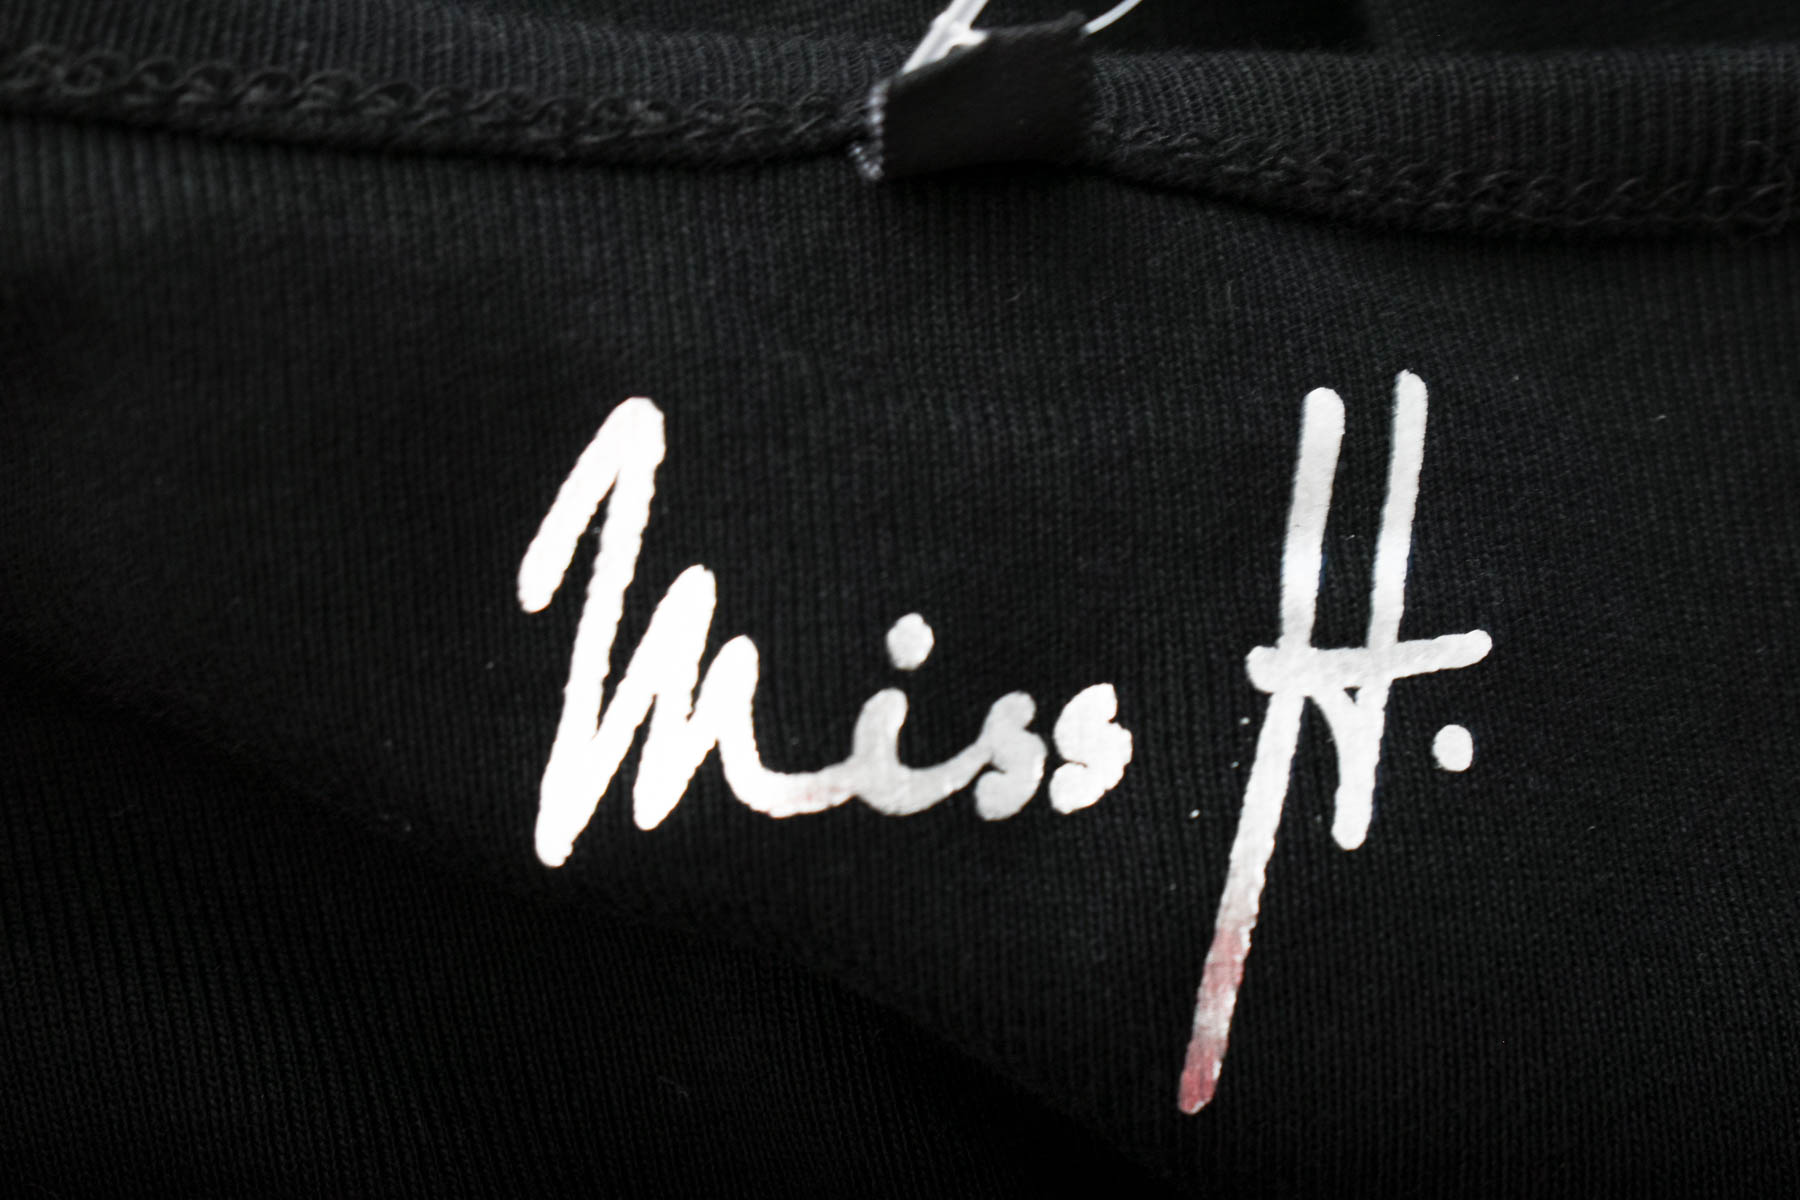 Γυναικεία μπλούζα - Miss H. - 2